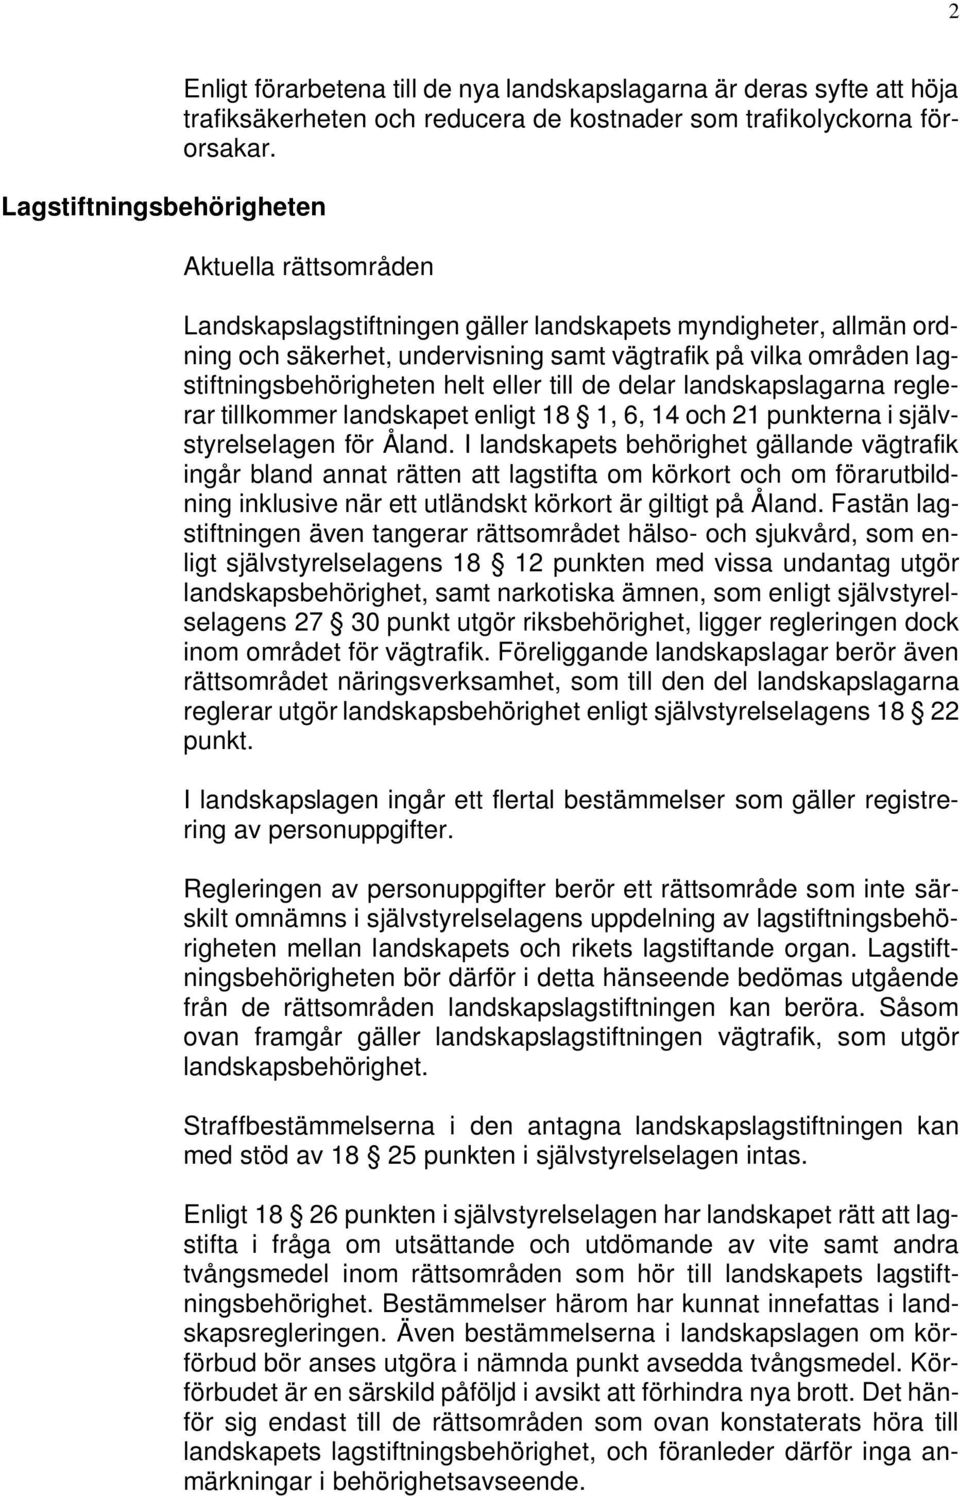 delar landskapslagarna reglerar tillkommer landskapet enligt 18 1, 6, 14 och 21 punkterna i självstyrelselagen för Åland.